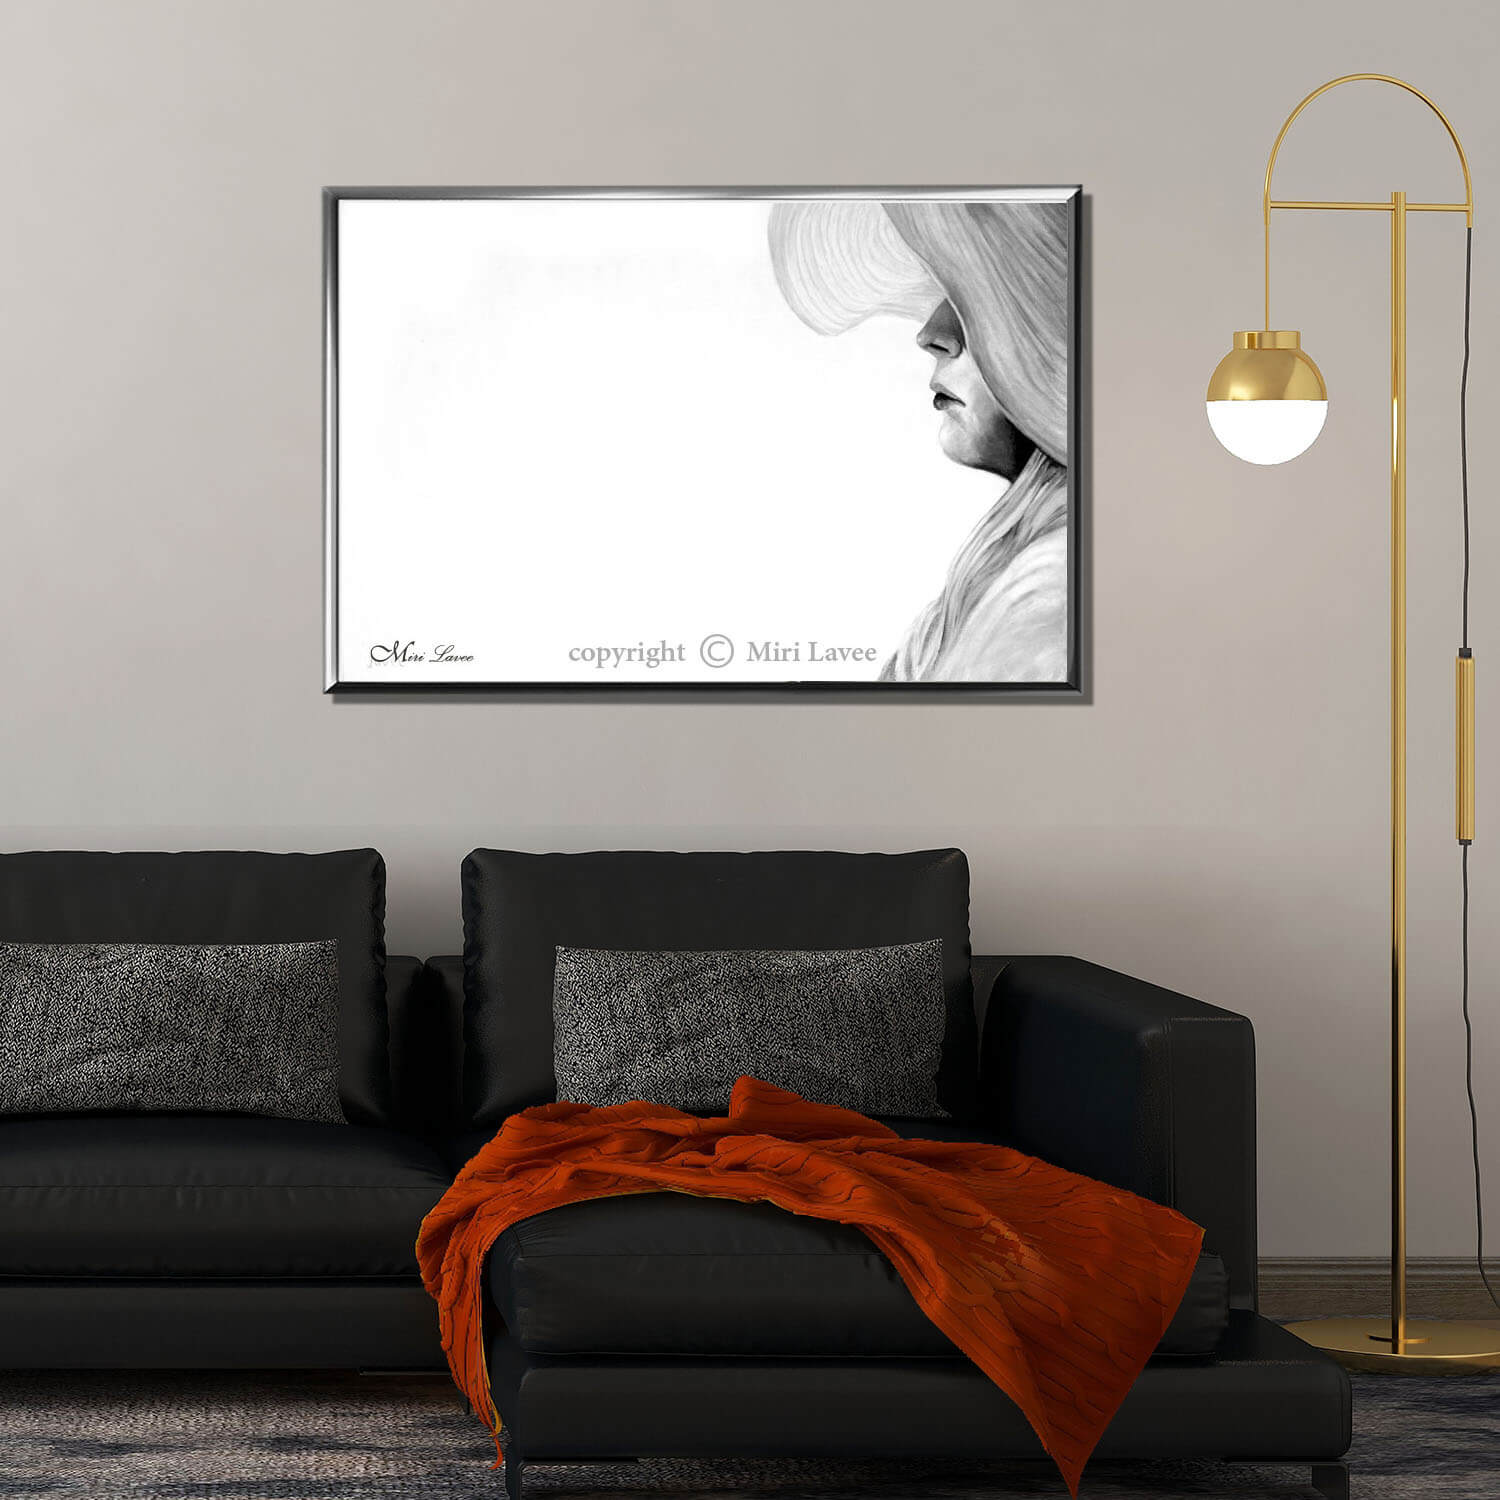 ציור נערה עם כובע, מביטה למרחק ציור בגוונים אפורים על רקע לבן תמונה רגועה וייחודית בסלון מעוצב מעל ספה שחורה ציירת מירי לביא